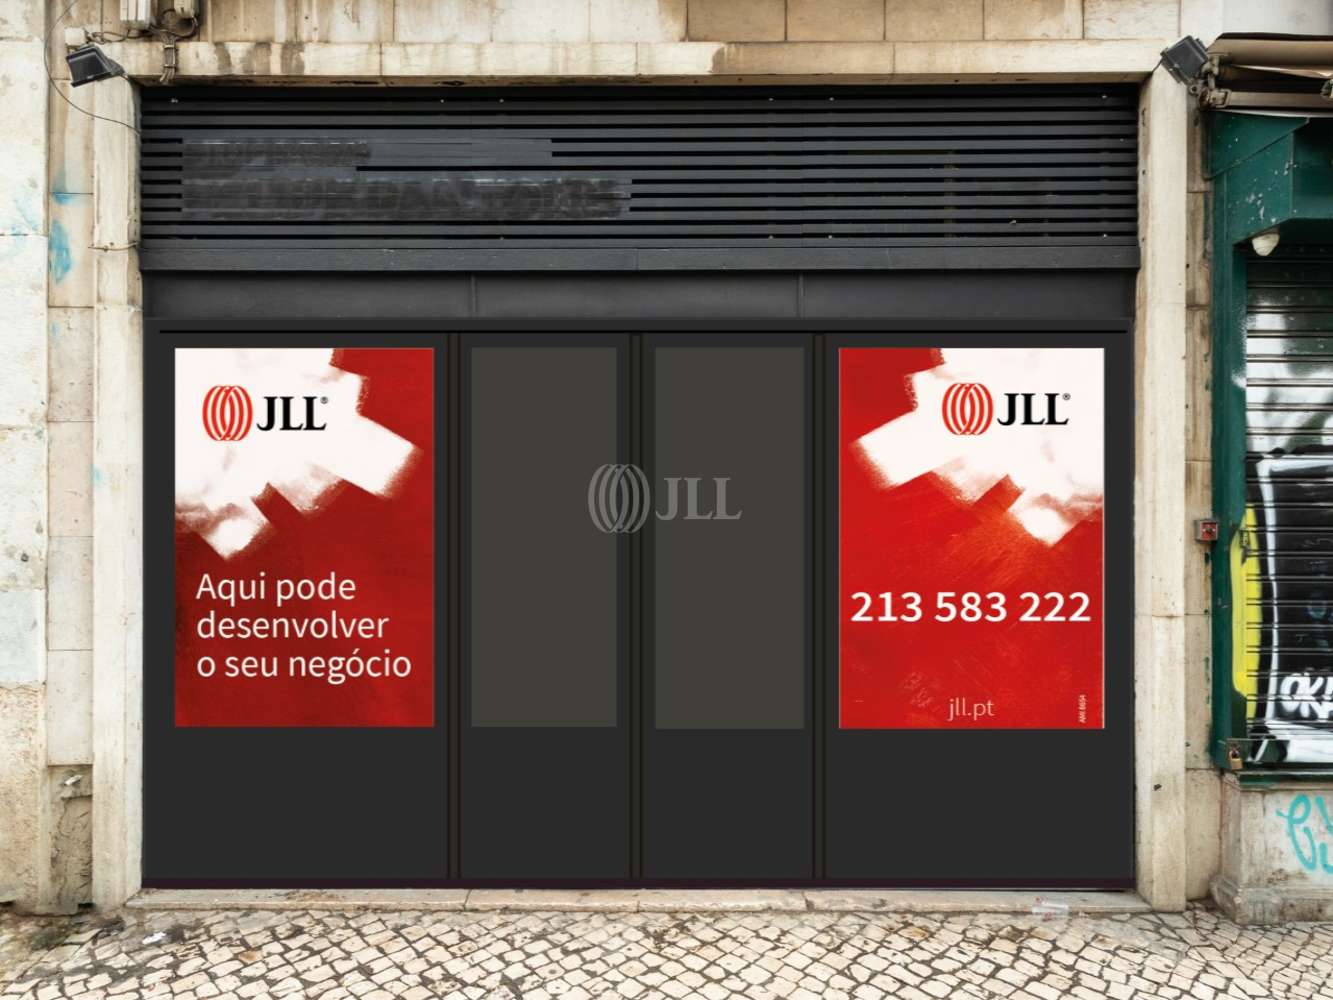 Loja Lisboa - Loja para venda ou arrendamento Rua de São Paulo 130 